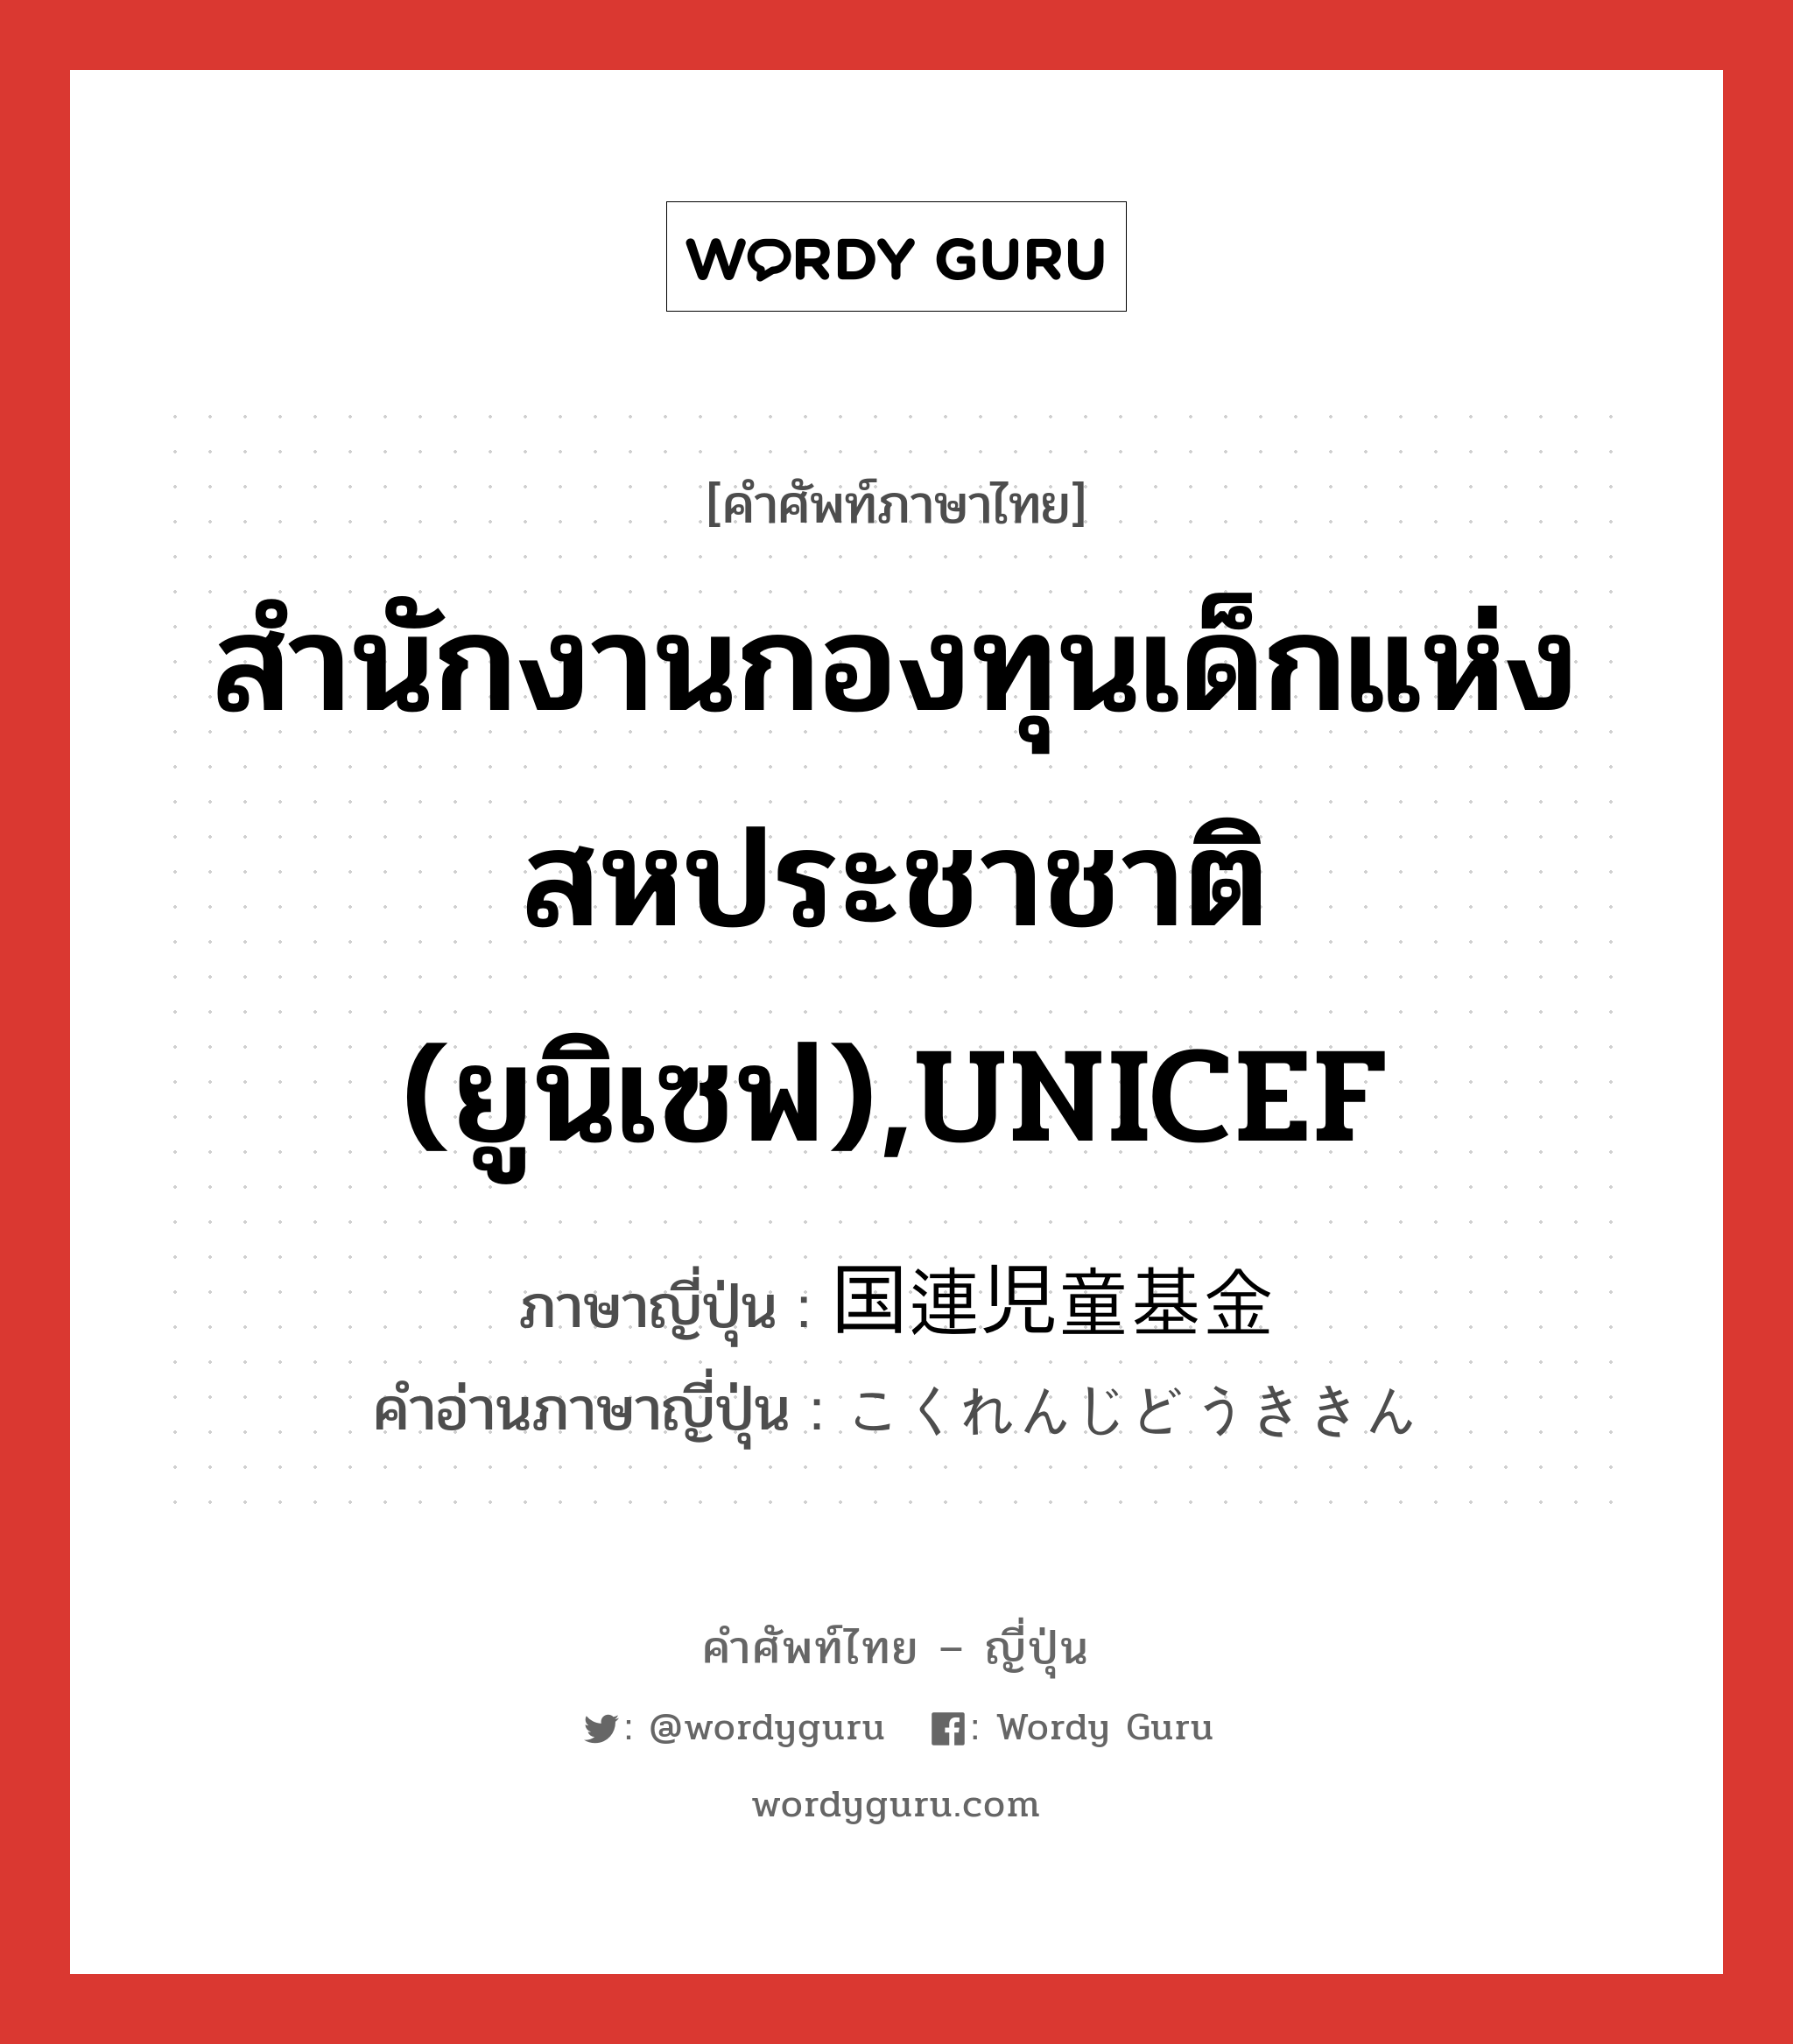 สำนักงานกองทุนเด็กแห่งสหประชาชาติ (ยูนิเซฟ),UNICEF ภาษาญี่ปุ่นคืออะไร, คำศัพท์ภาษาไทย - ญี่ปุ่น สำนักงานกองทุนเด็กแห่งสหประชาชาติ (ยูนิเซฟ),UNICEF ภาษาญี่ปุ่น 国連児童基金 คำอ่านภาษาญี่ปุ่น こくれんじどうききん หมวด n หมวด n